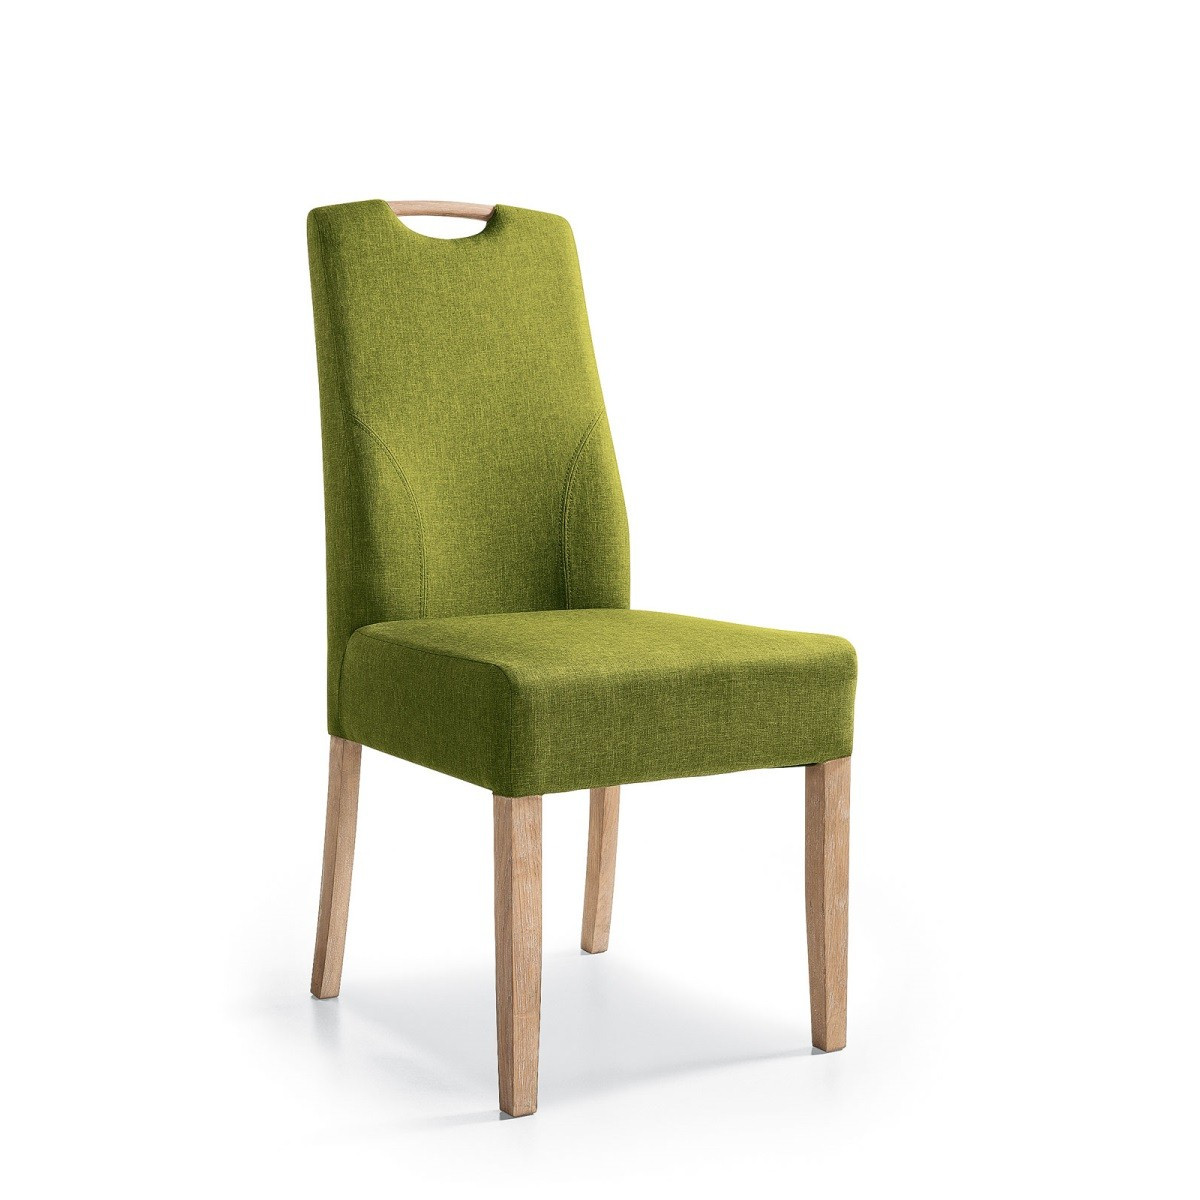 Esszimmerstühle Leder
 Möbel Aufregend esszimmerstühle leder musterring design